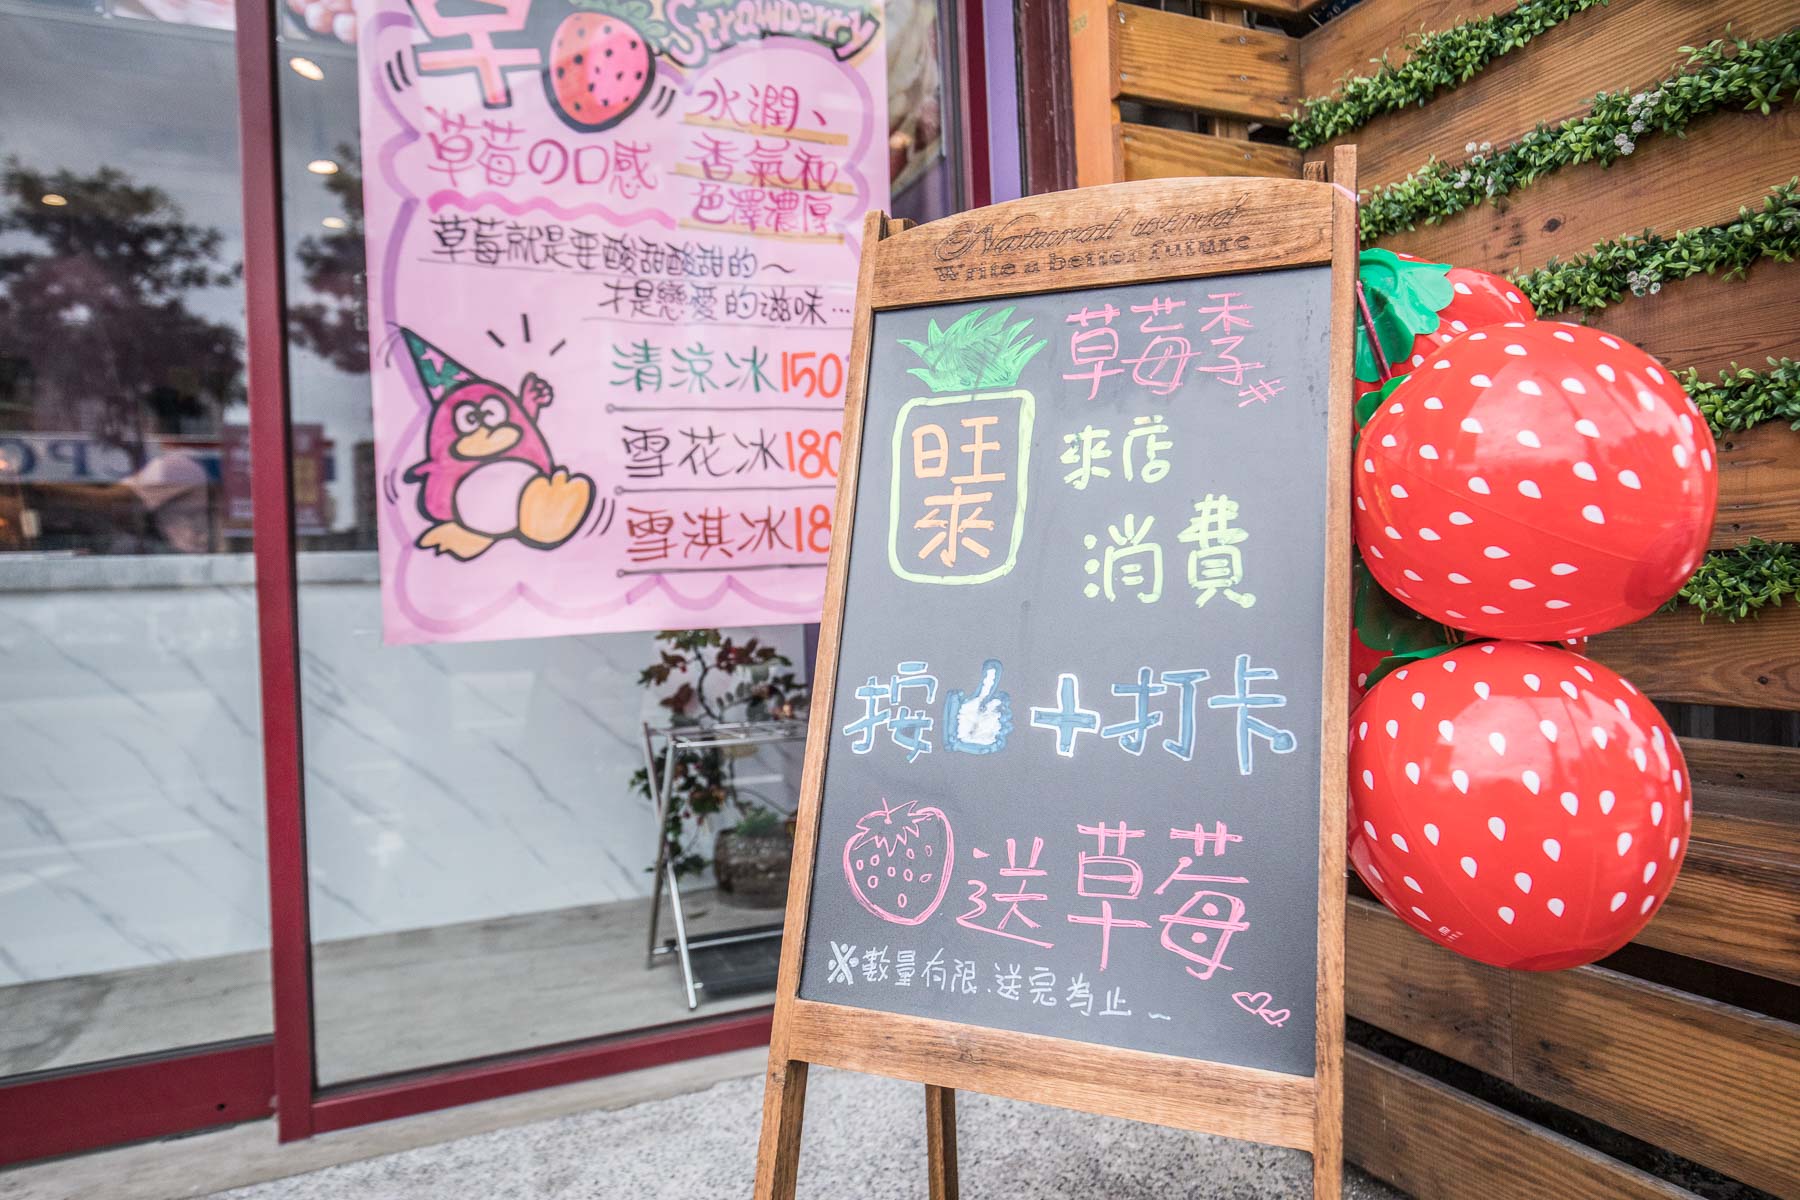 台北美食,台北甜點,蘆洲美食,蘆洲甜點,蘆洲冰品,蘆洲草莓冰,台北草莓冰,草莓冰,旺來冰館